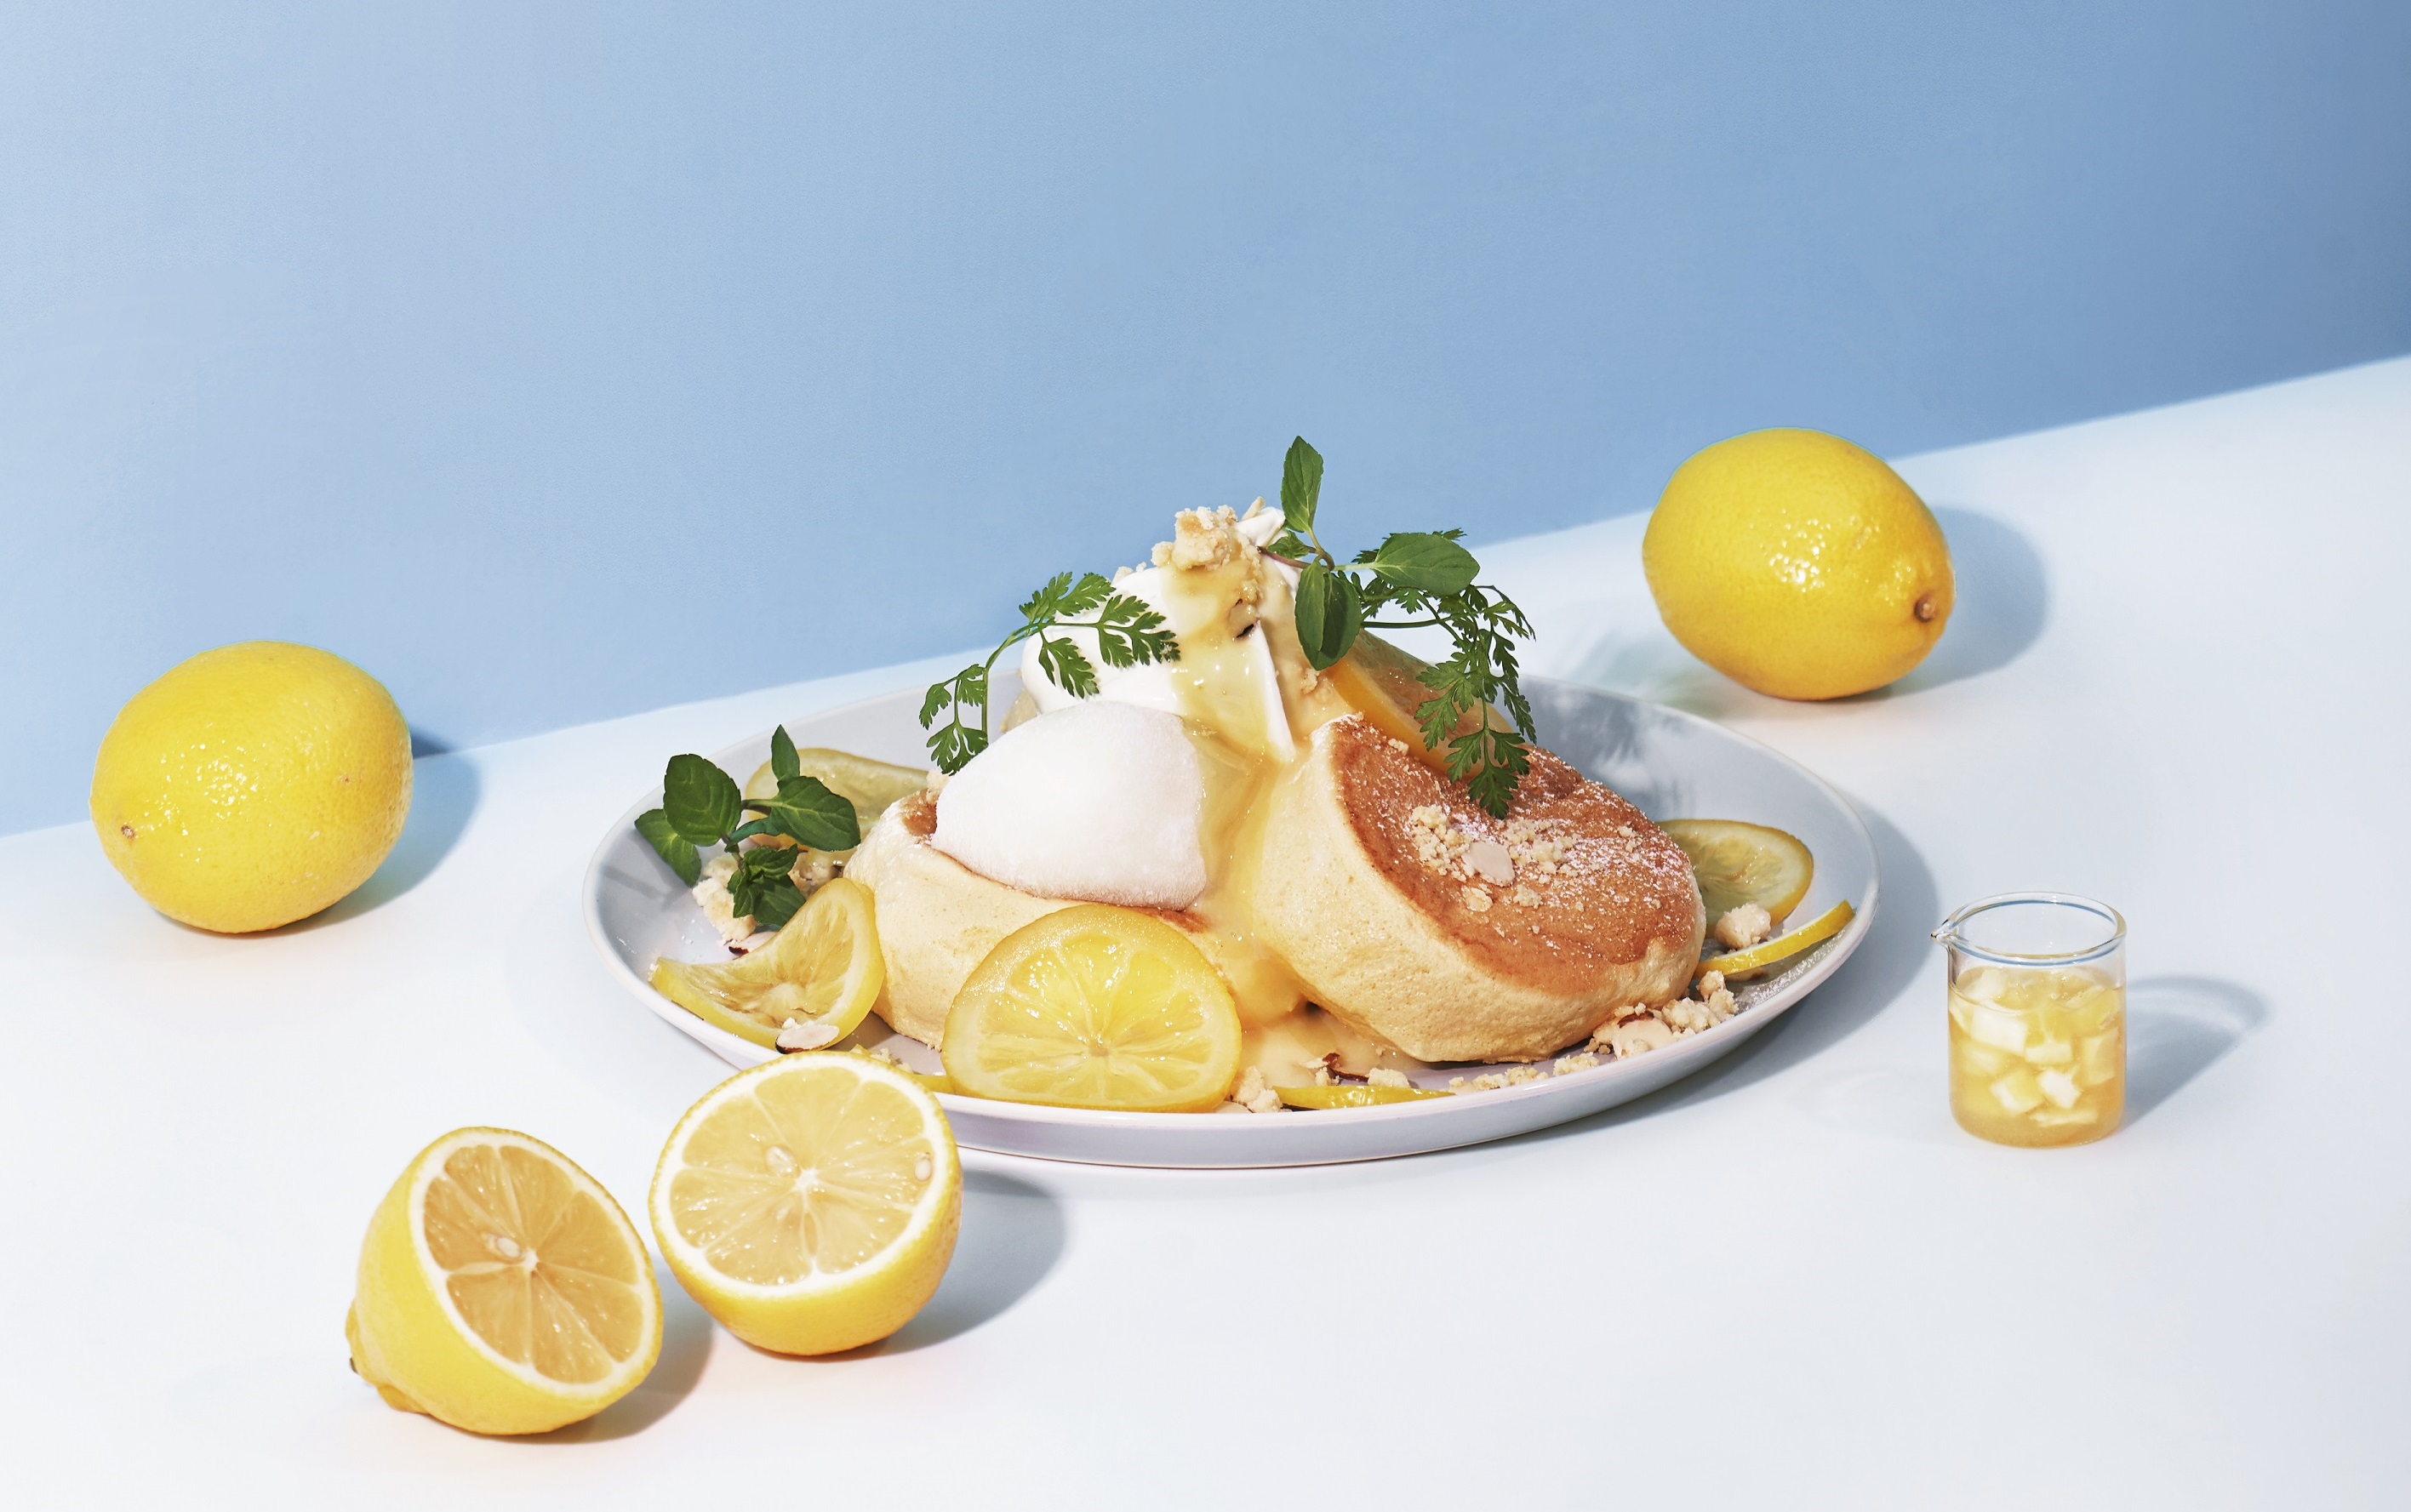 スフレパンケーキ専門店 Flipper S レモンチーズタルト がイメージの 奇跡のパンケーキ が登場テイクアウトにぴったりな 2種のドリンクが選べる ツインドリンクカップ も 株式会社ベイクルーズのプレスリリース